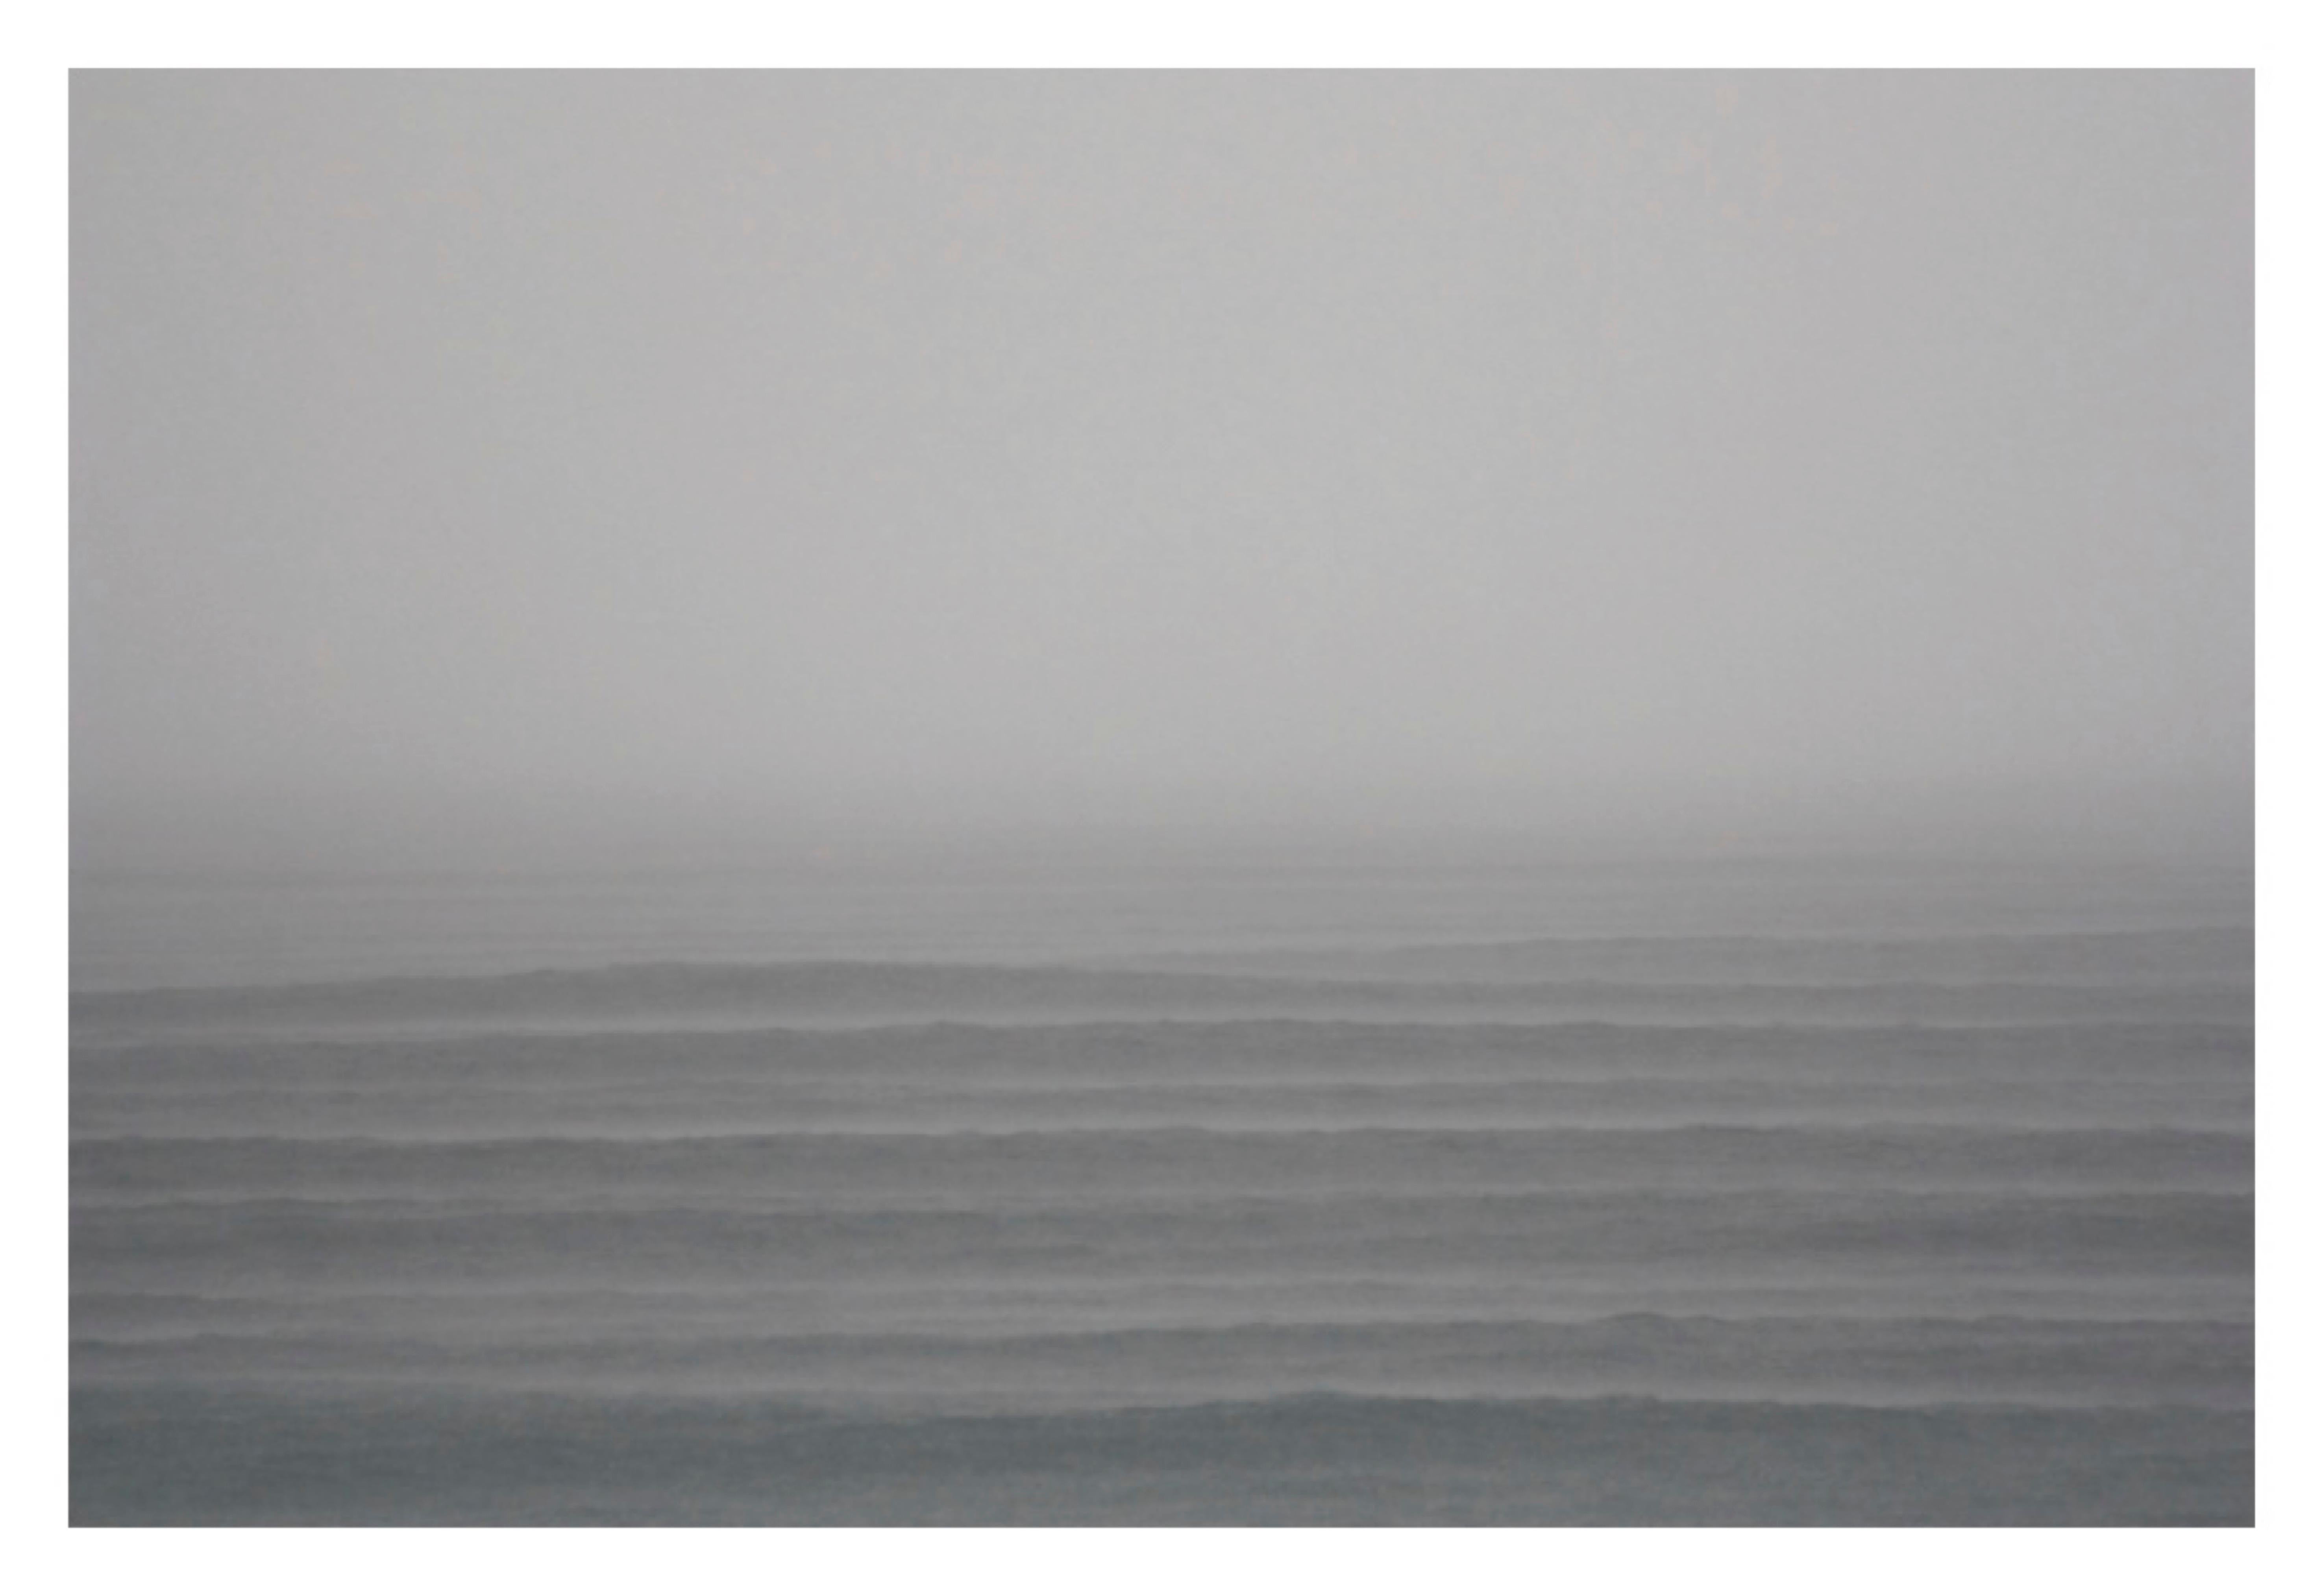 Black and White Photograph Stuart Möller - Mer calme -  Impression surdimensionnée signée édition limitée 